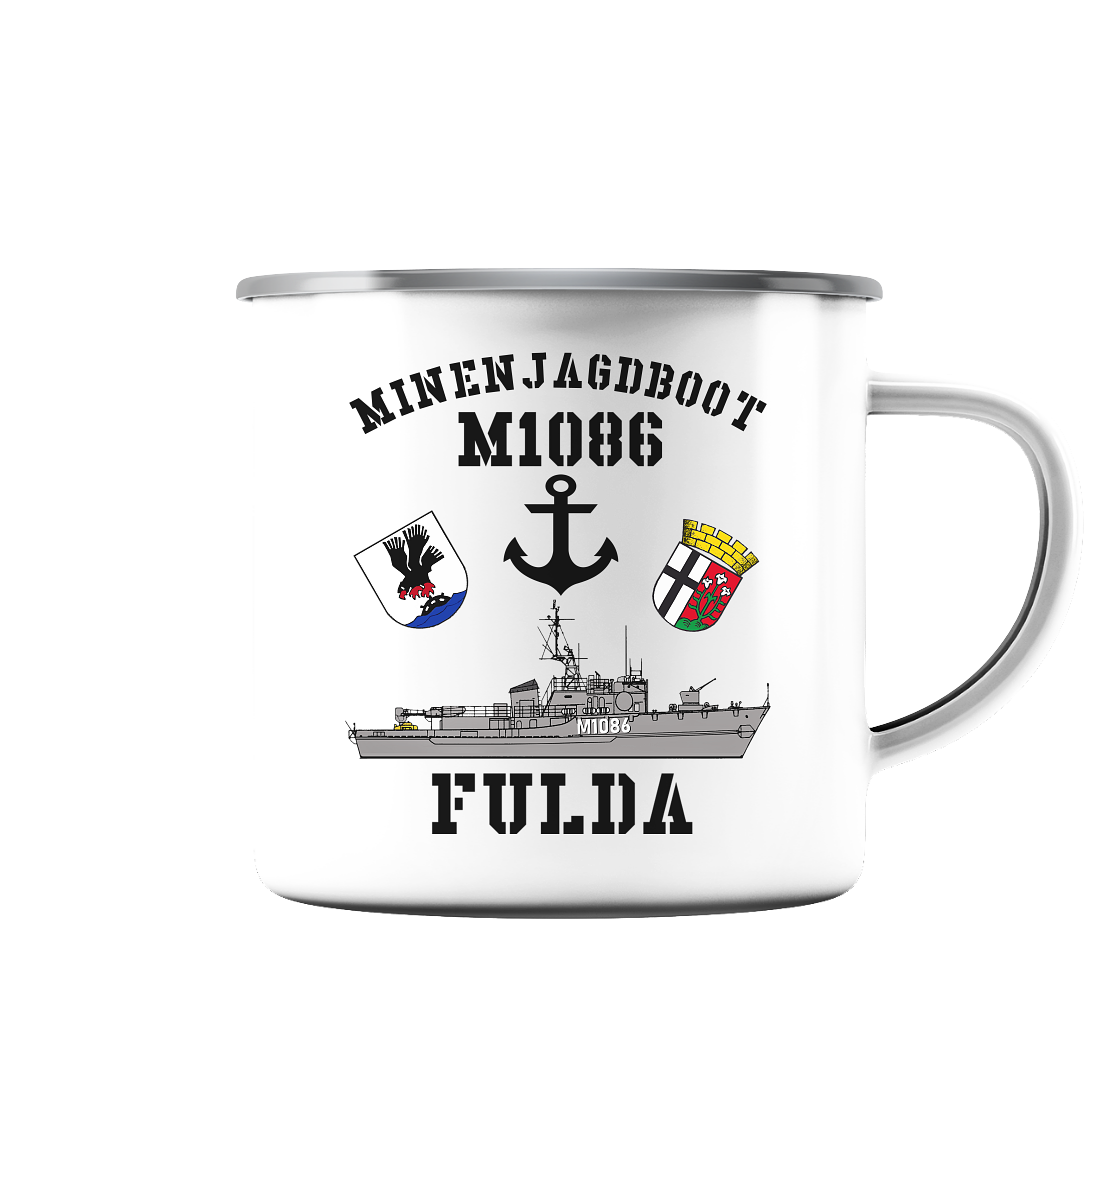 Mij.-Boot M1086 FULDA - Emaille Tasse (Silber)